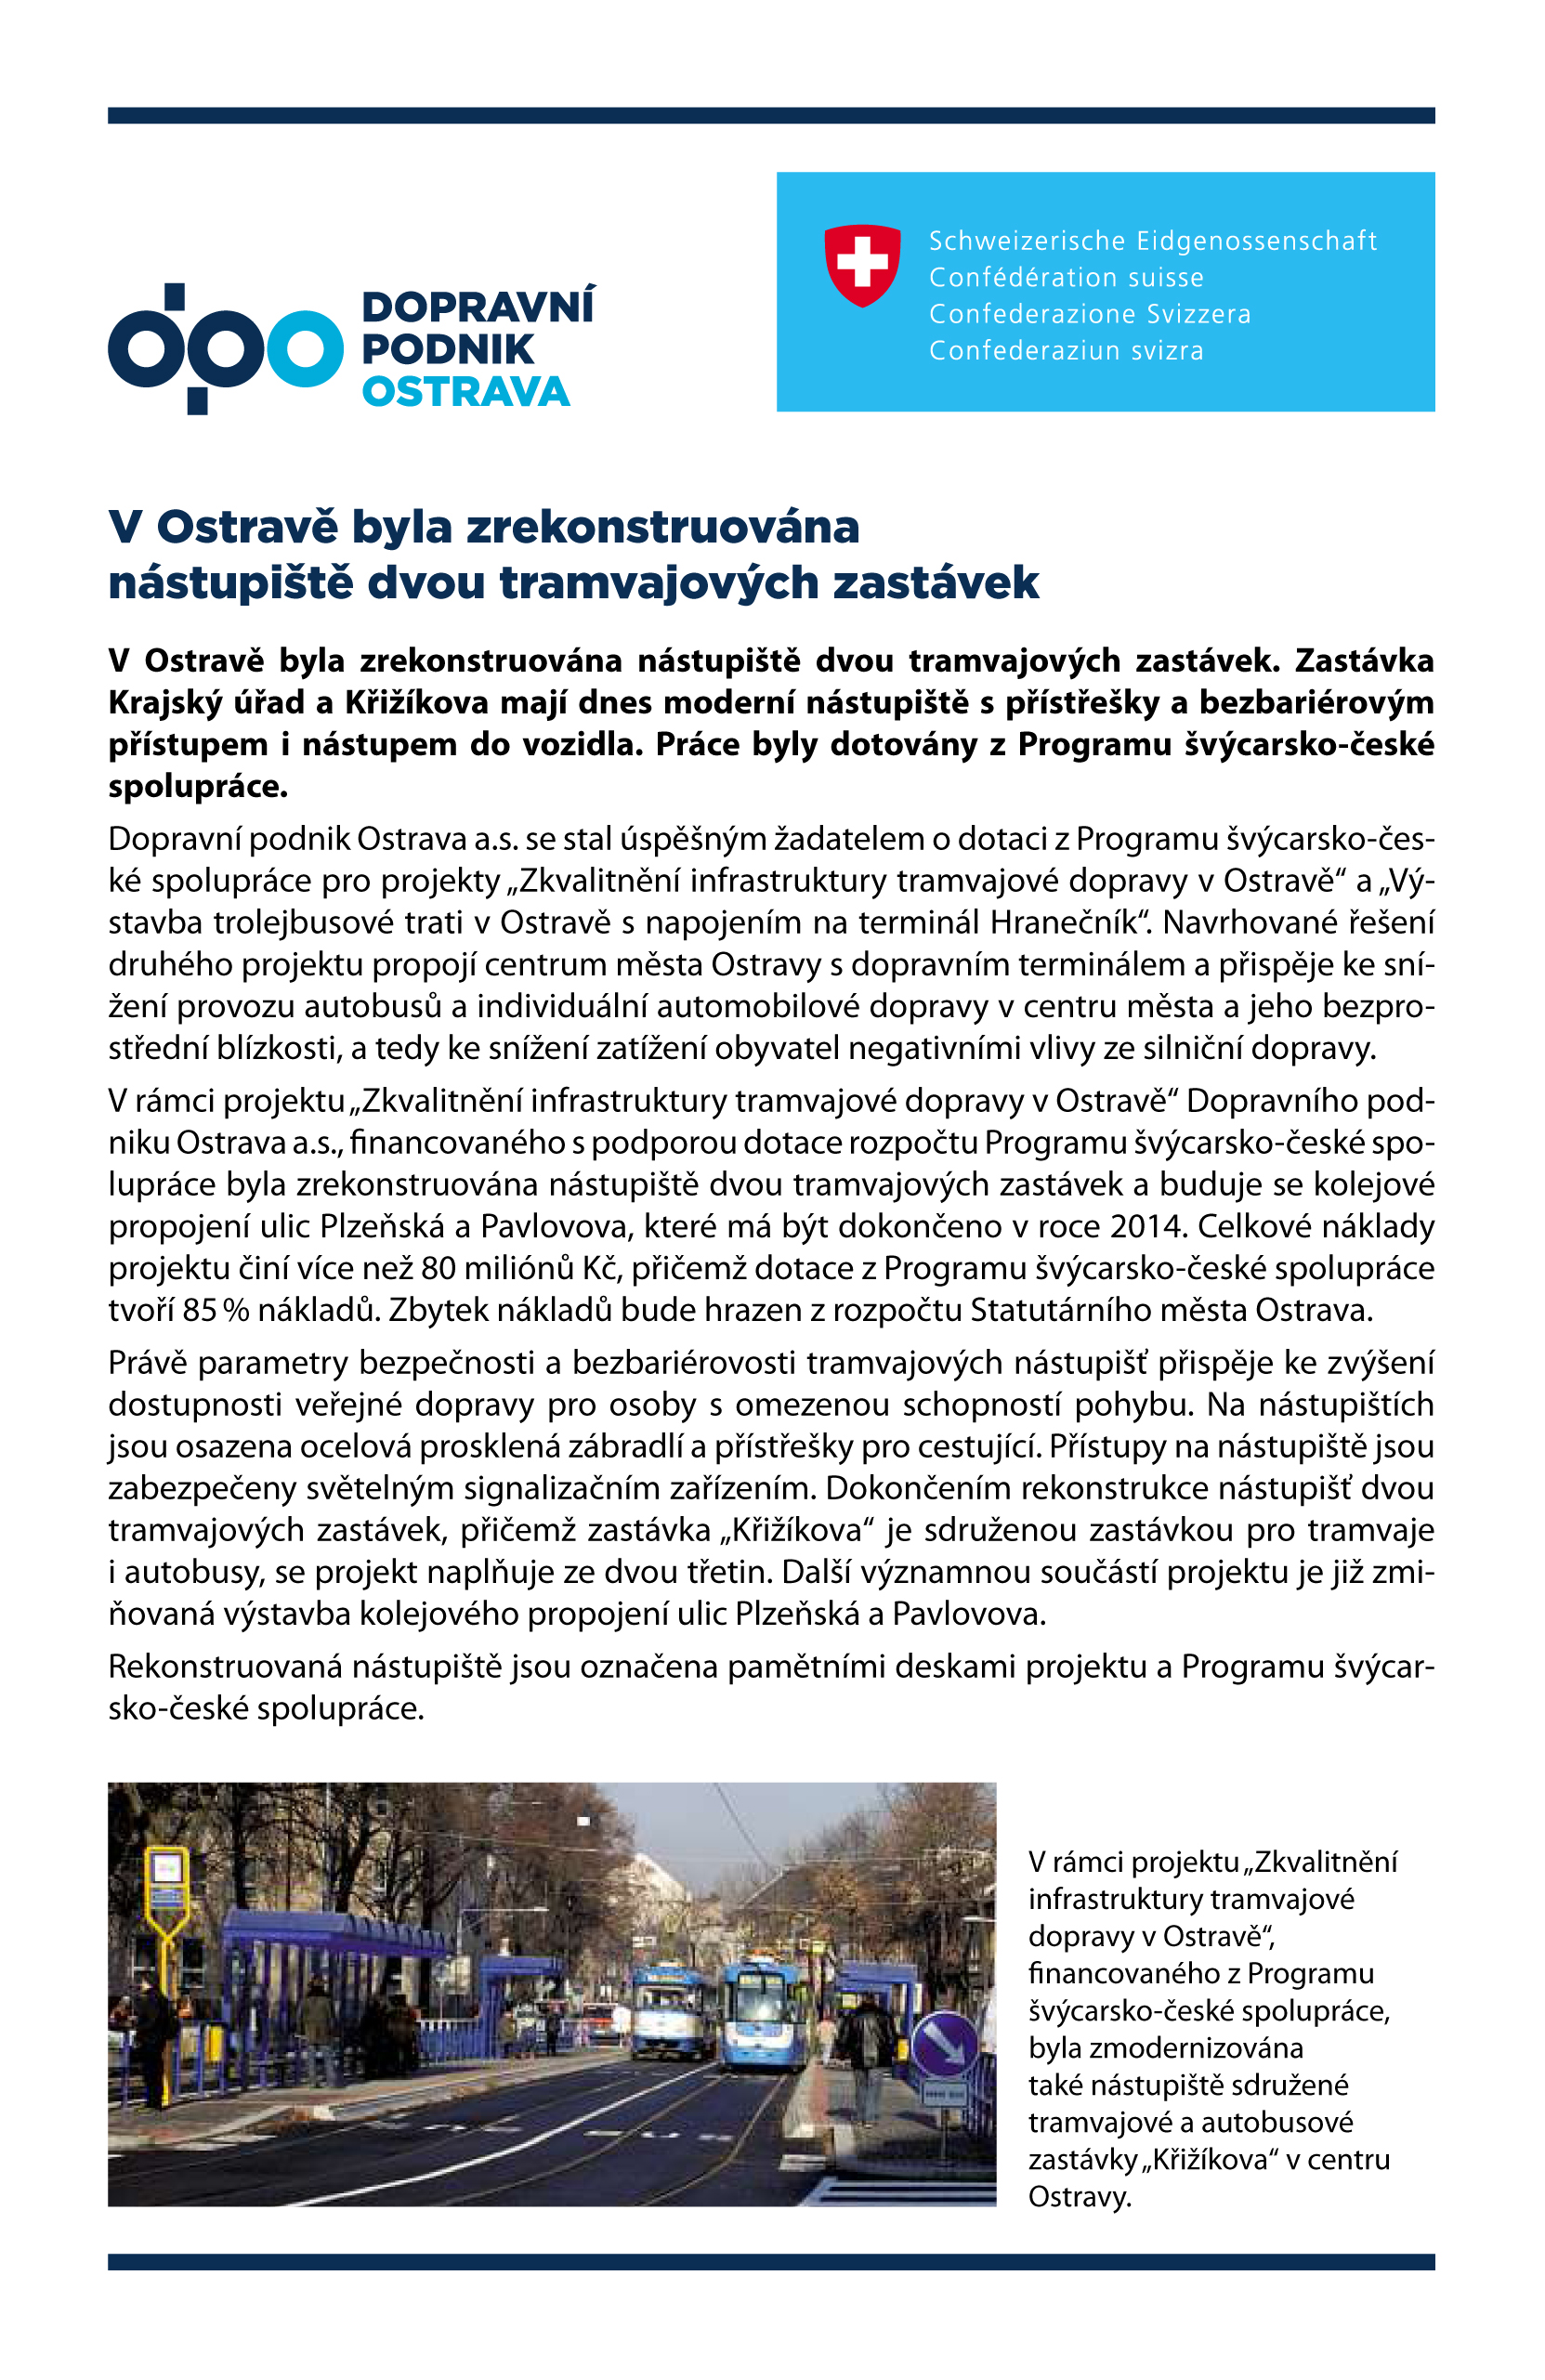 V Ostravě byla zrekonstruována nástupiště dvou tramvajových zastávek - Zdroj: Lidové noviny, 20.12.2013